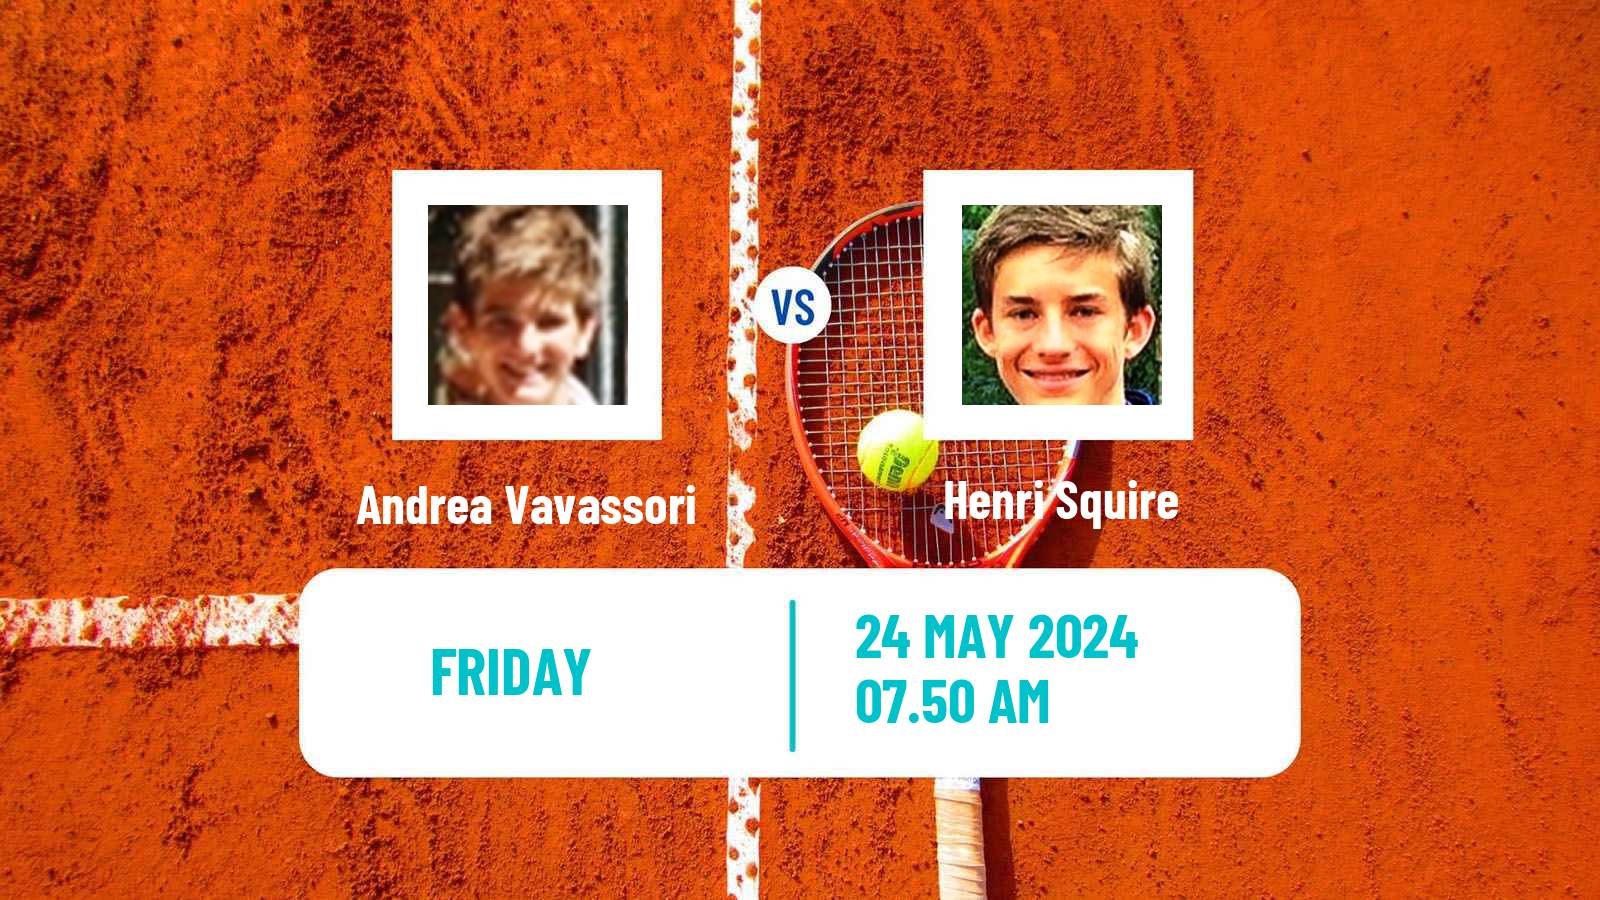 Tennis ATP Roland Garros Andrea Vavassori - Henri Squire